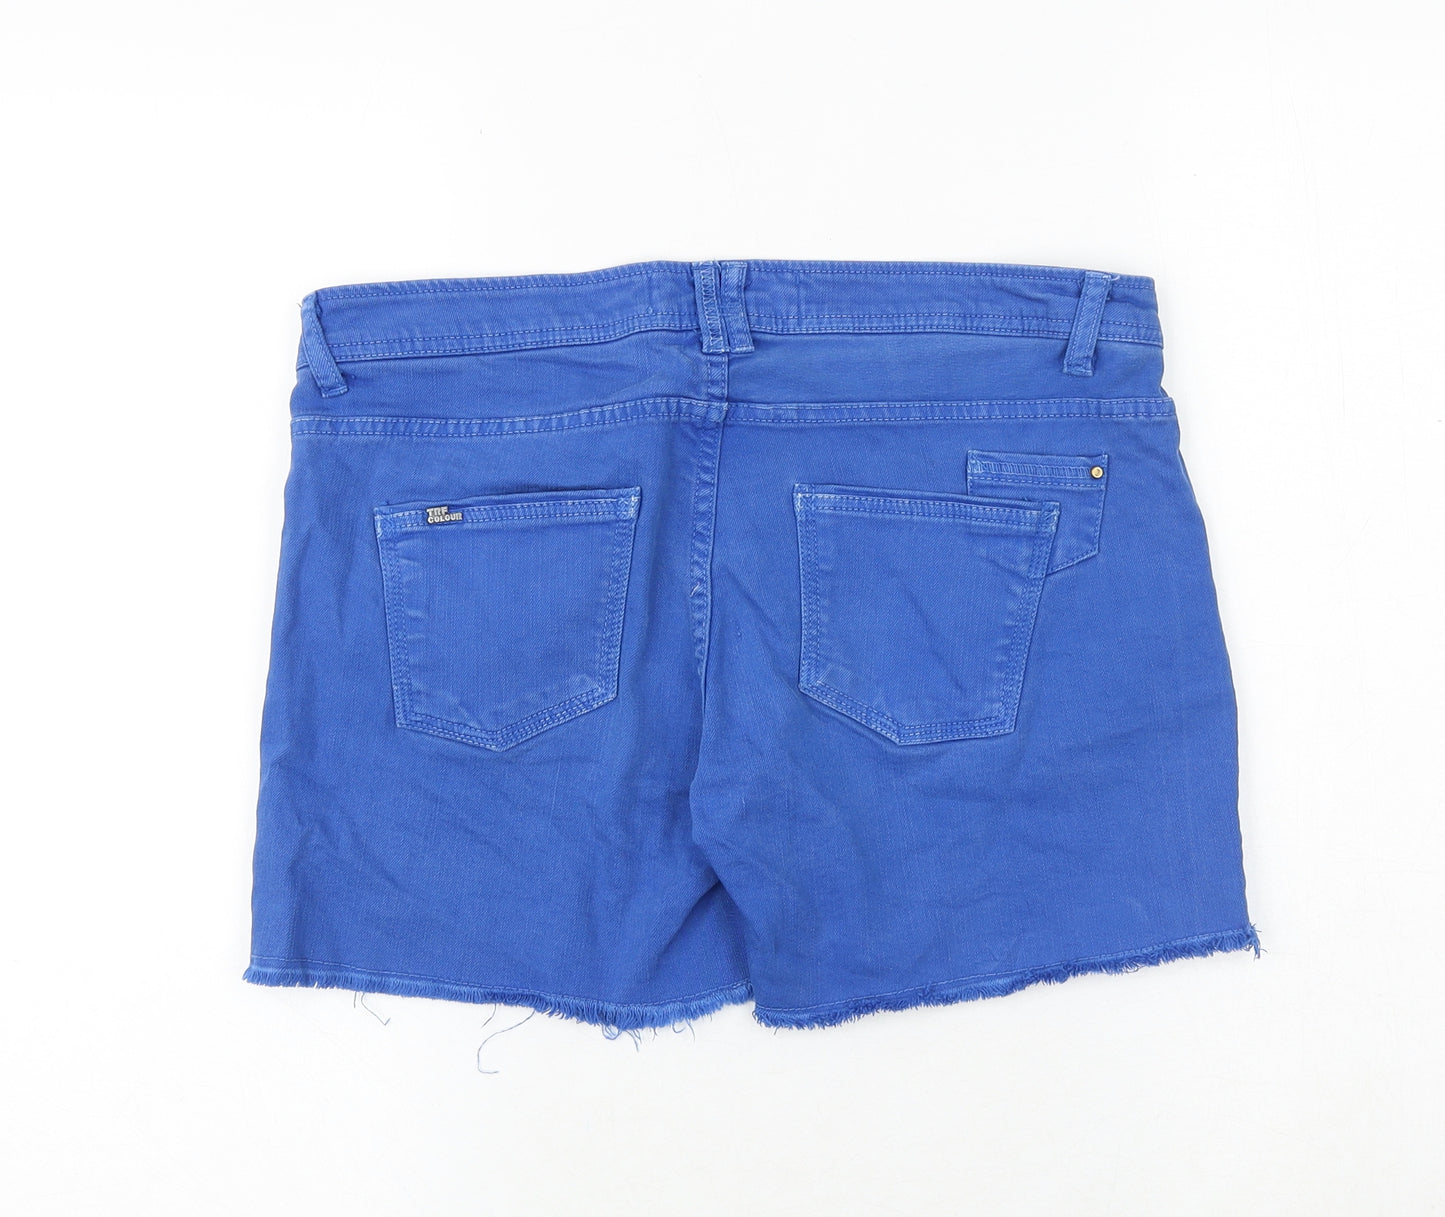 TRF Womens Blue Cotton Cut-Off Shorts Size 10 Regular Zip